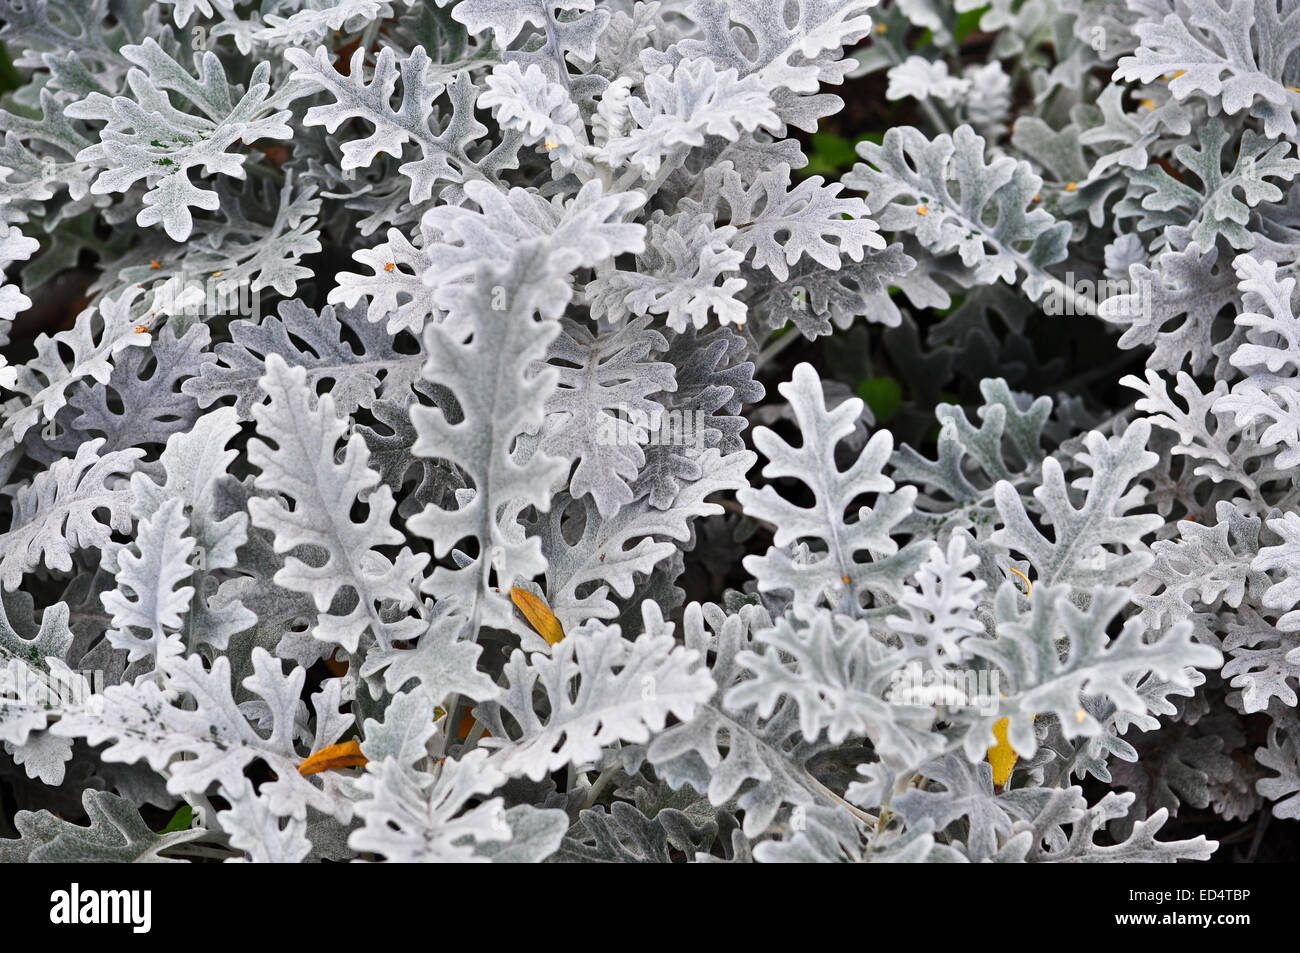 Zusammenfassung Hintergrund mit dekorativen Blättern. Ausgefallene farblos Bild verlässt von Zierpflanzen im Blumenbeet. Stockfoto